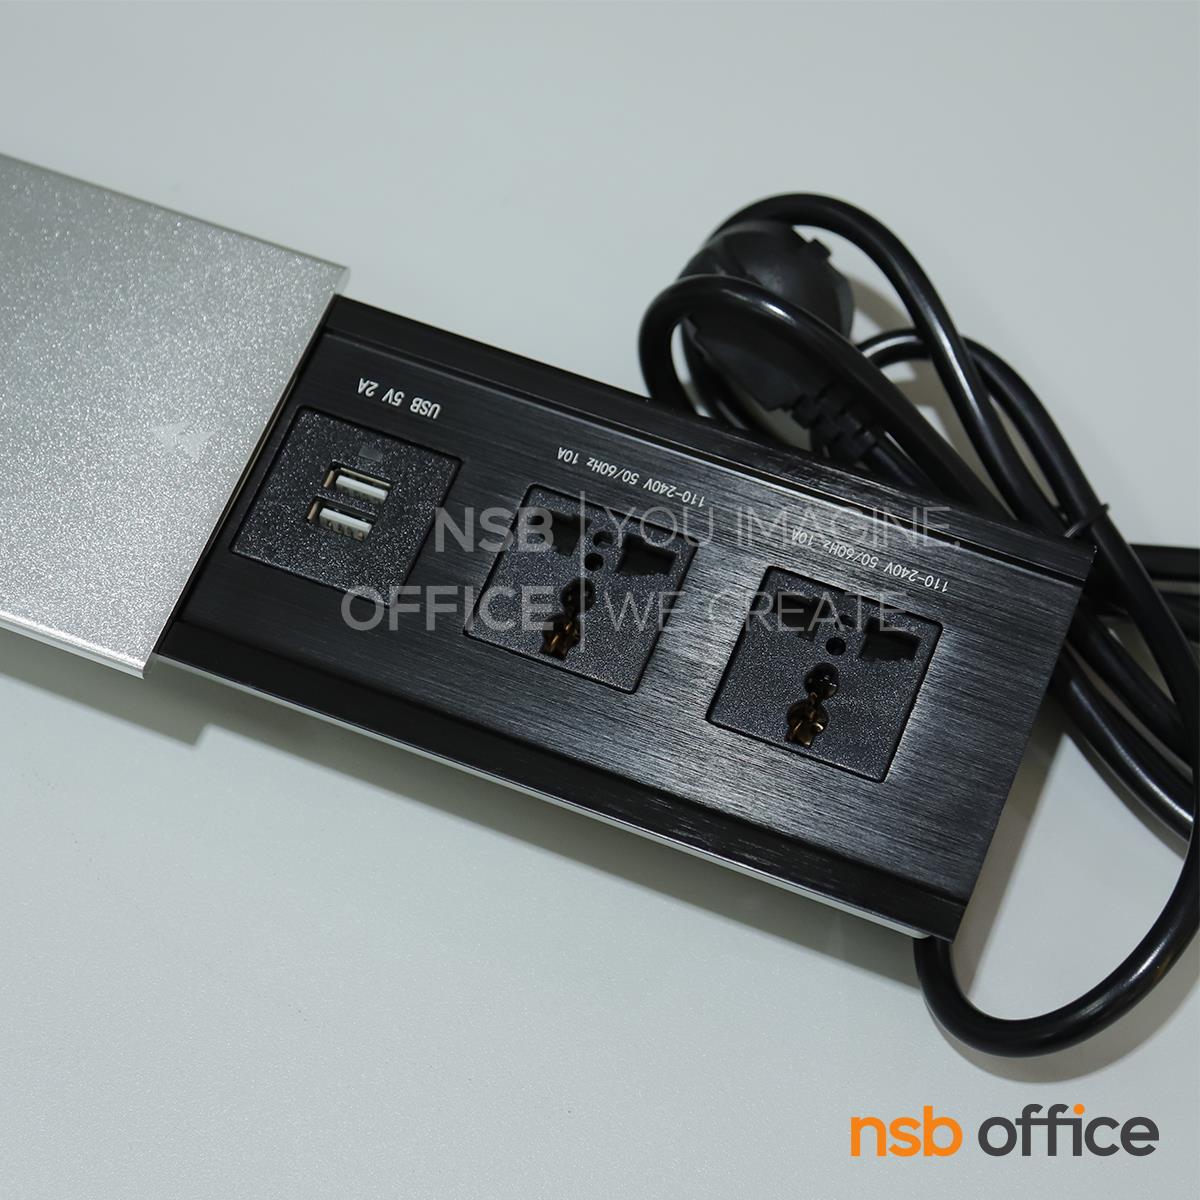 ป็อปอัพฝาสไลด์ 2 Power 2 USB รุ่น Connella (คอนเนลล่า)  มีสายปลั๊กไฟ